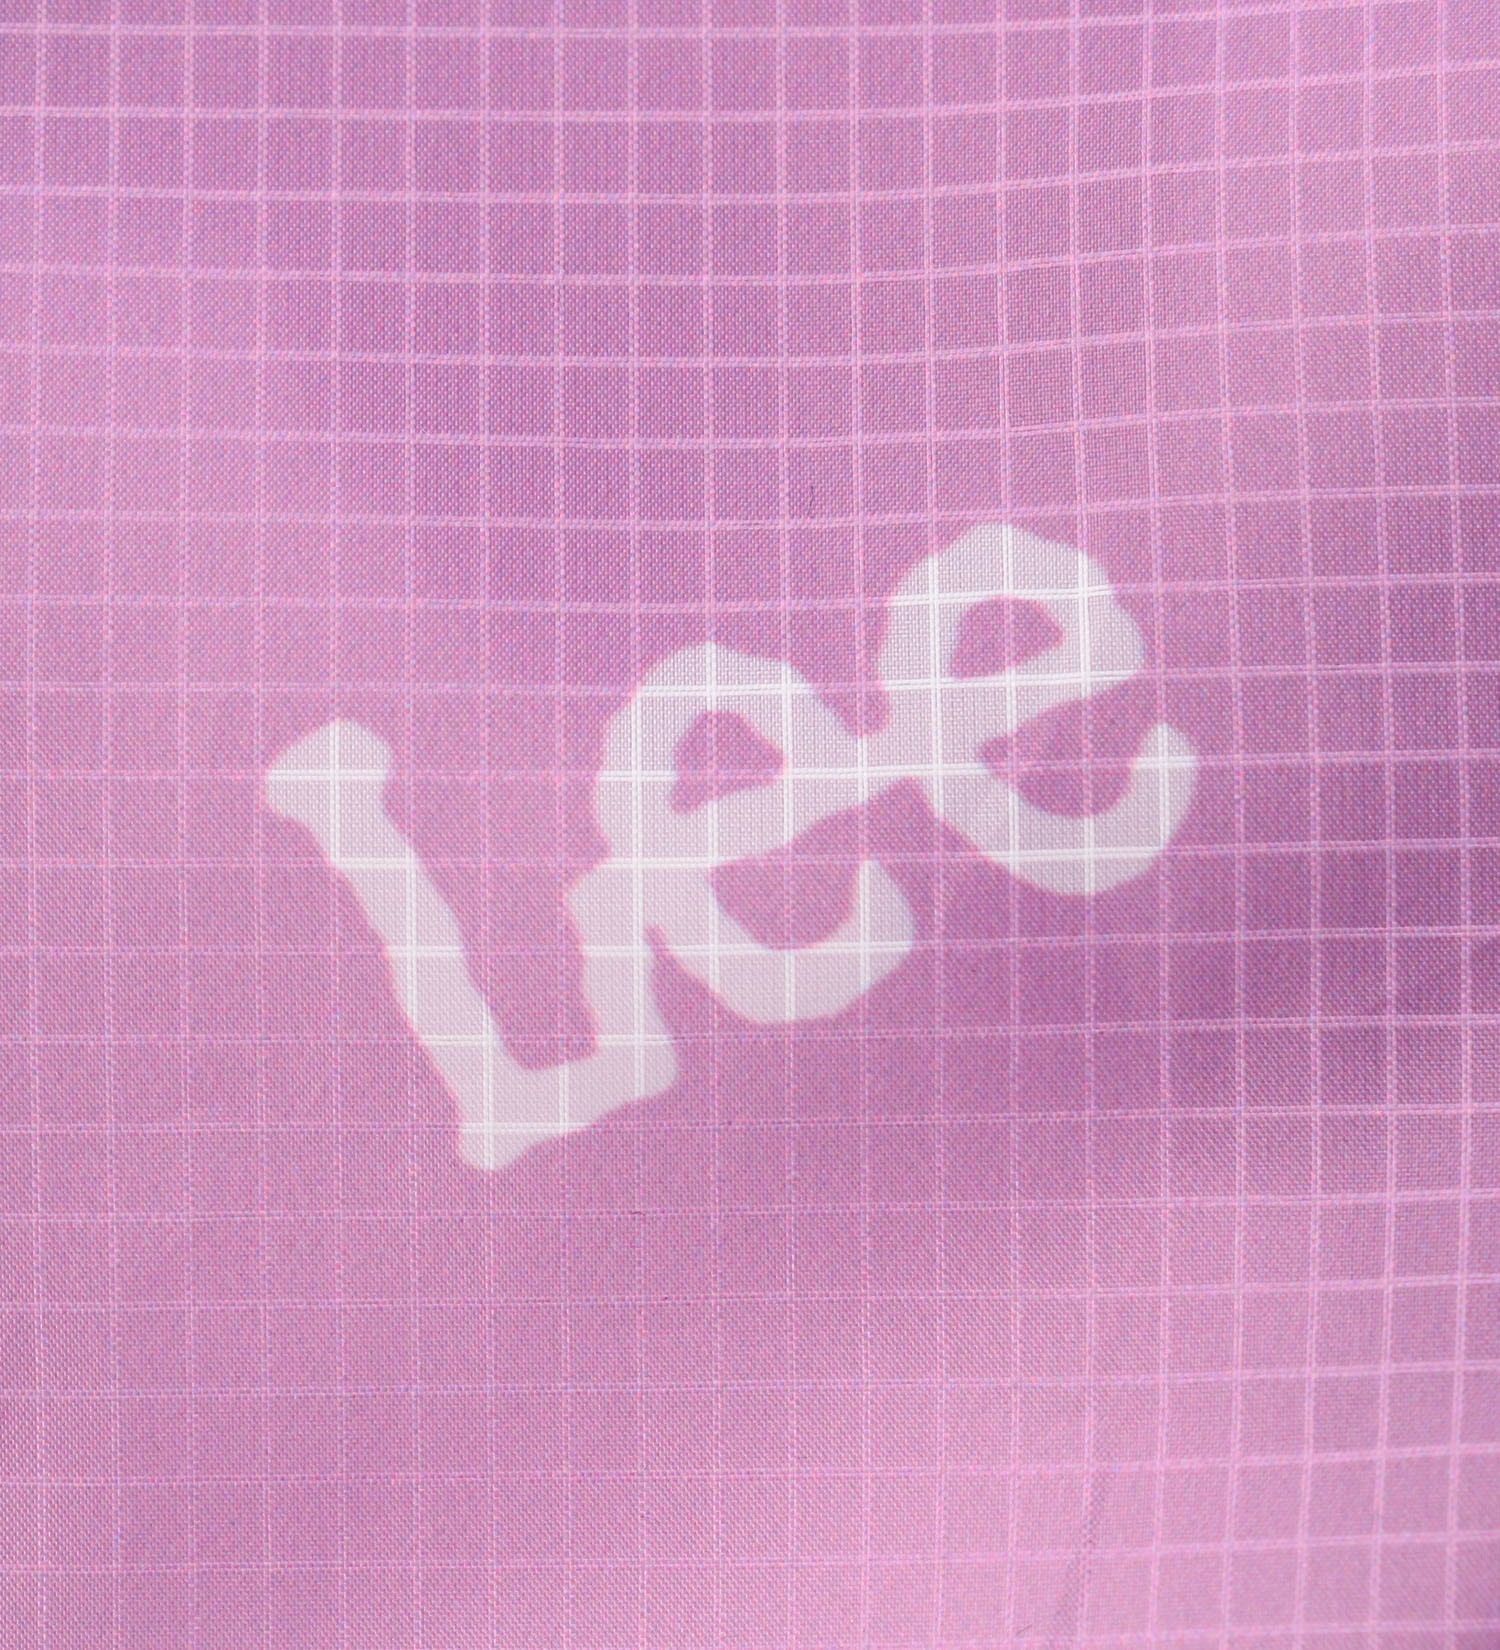 Lee(リー)のエコバッグ/ミニトート|バッグ/エコバッグ/サブバッグ/レディース|ピンク